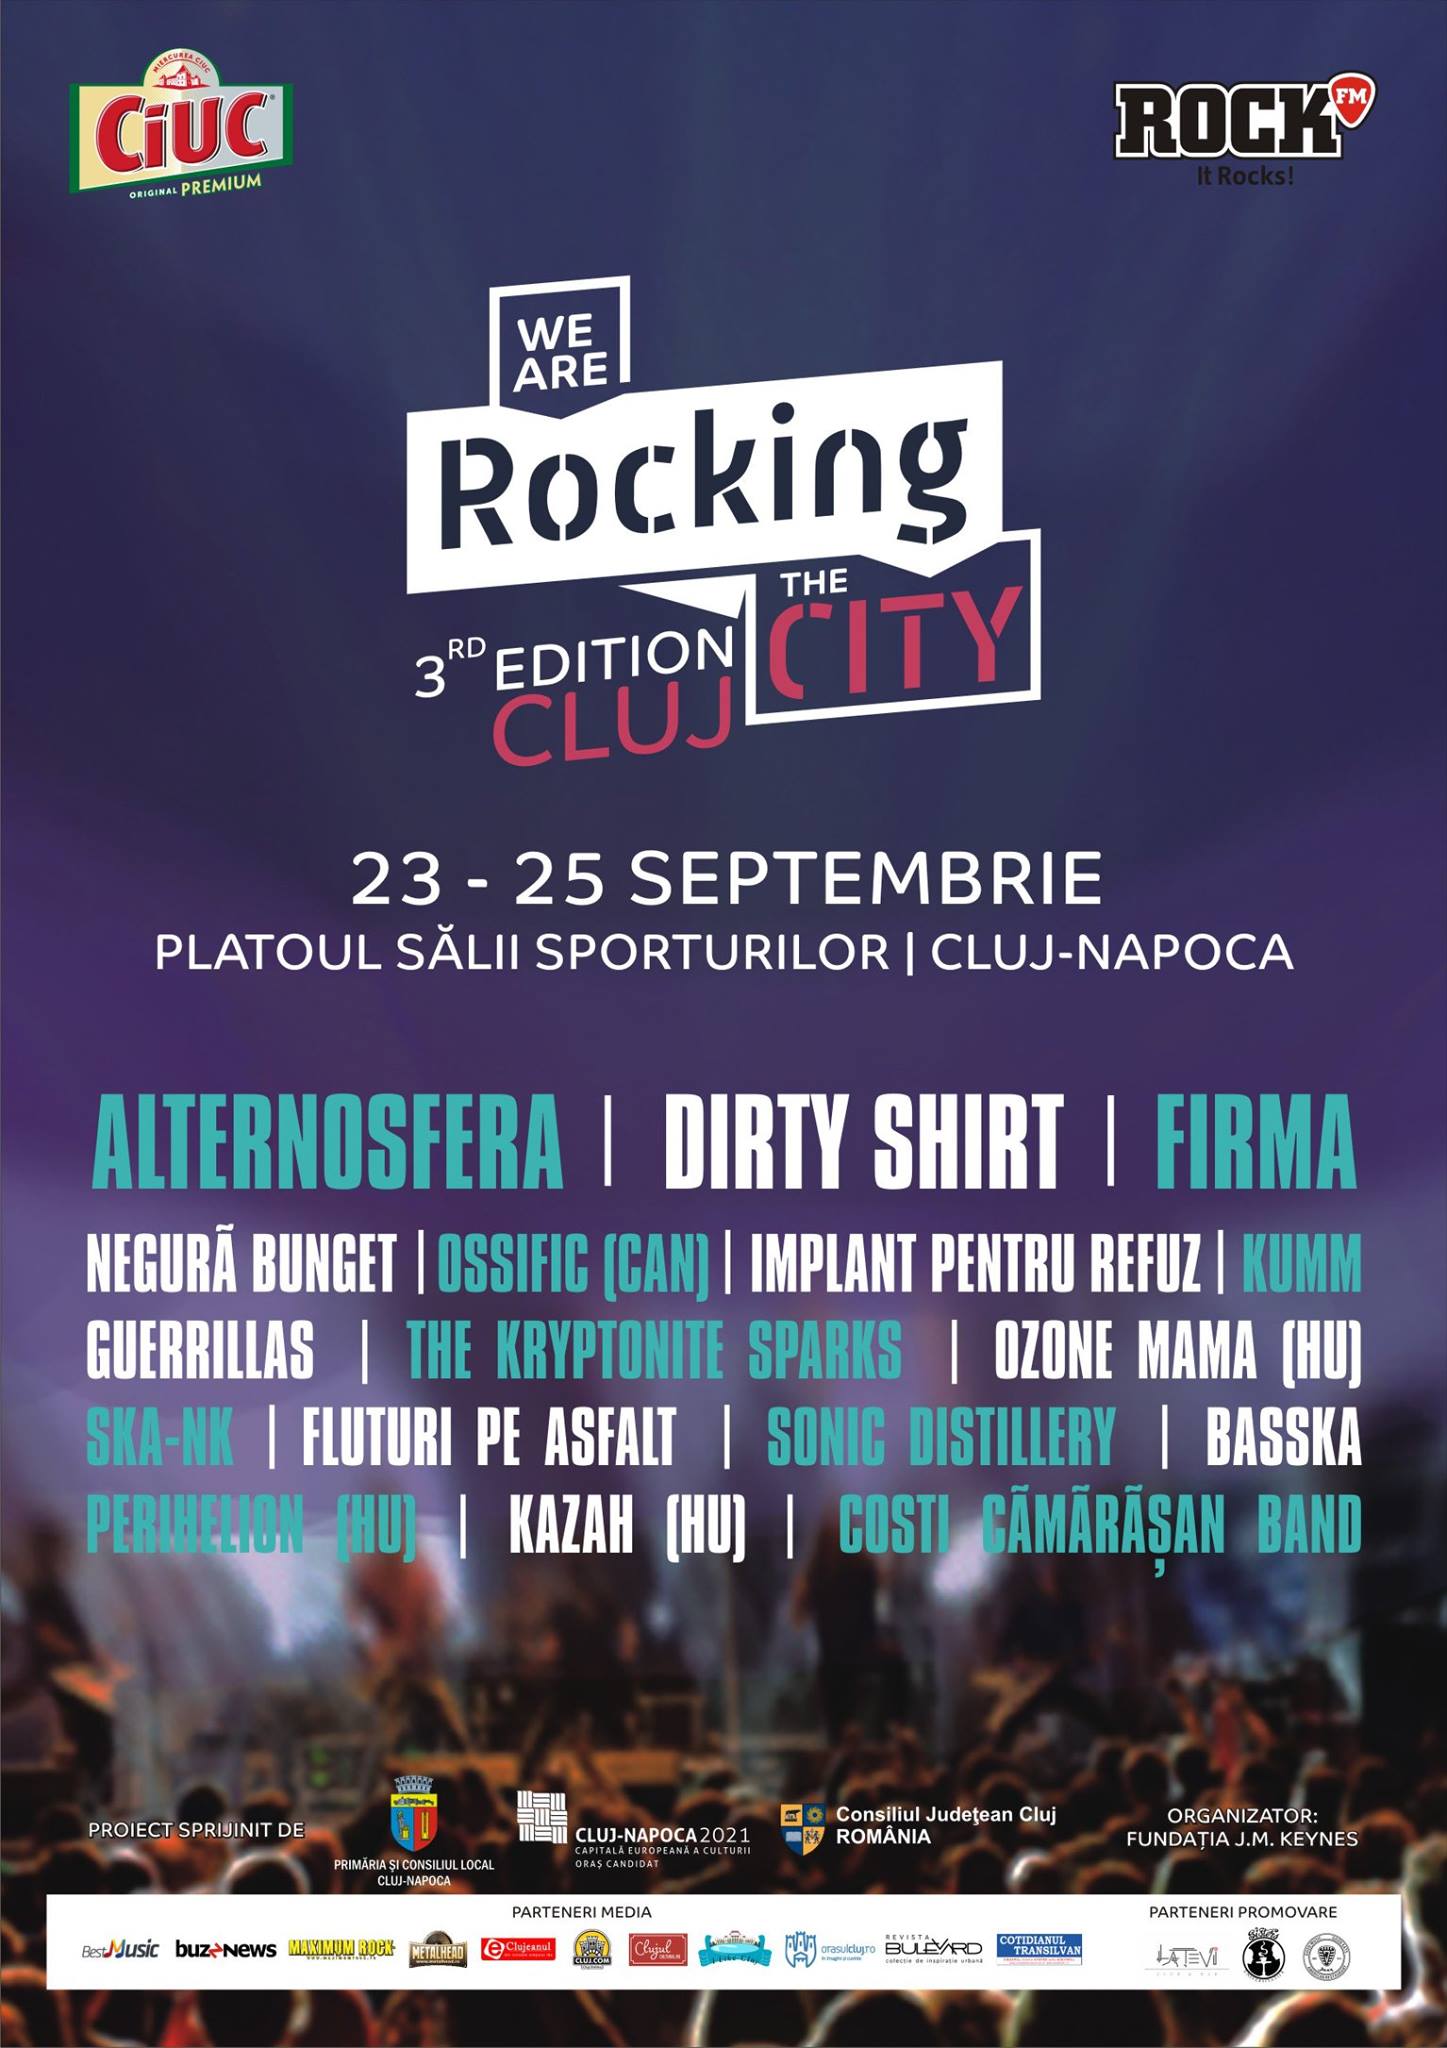 We are Rocking the City @ Platoul Sălii Sporturilor